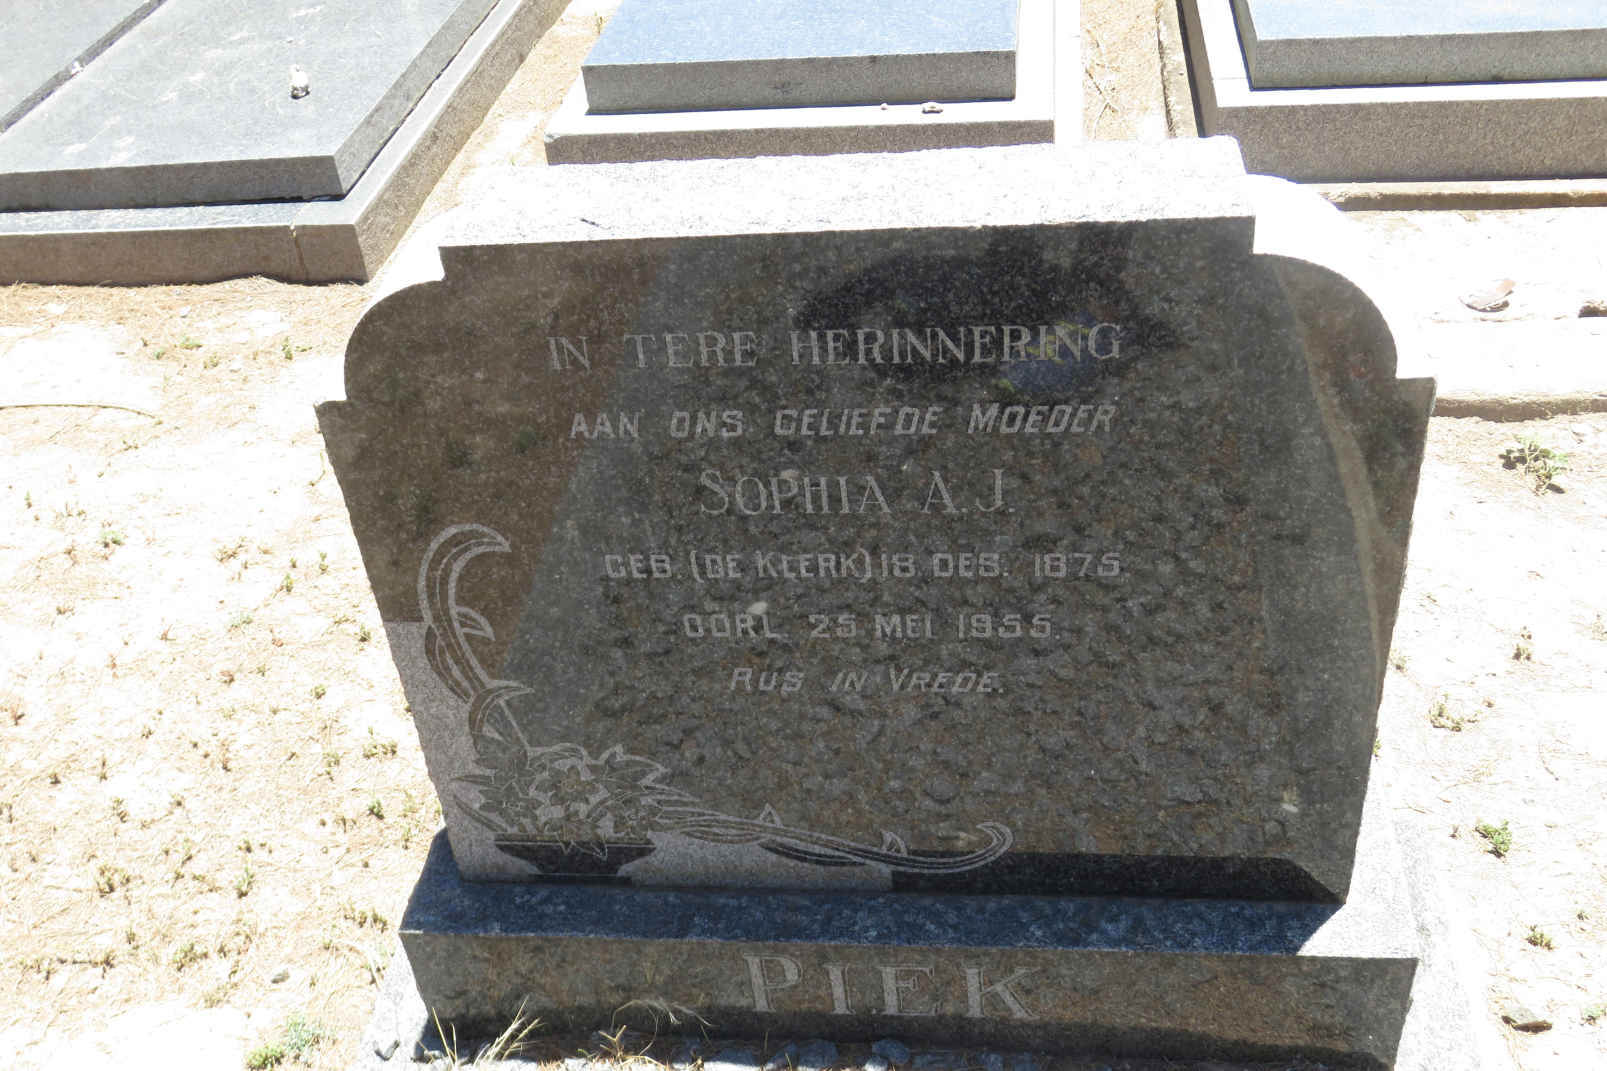 PIEK Sophia A.J. nee DE KLERK 1875-1955